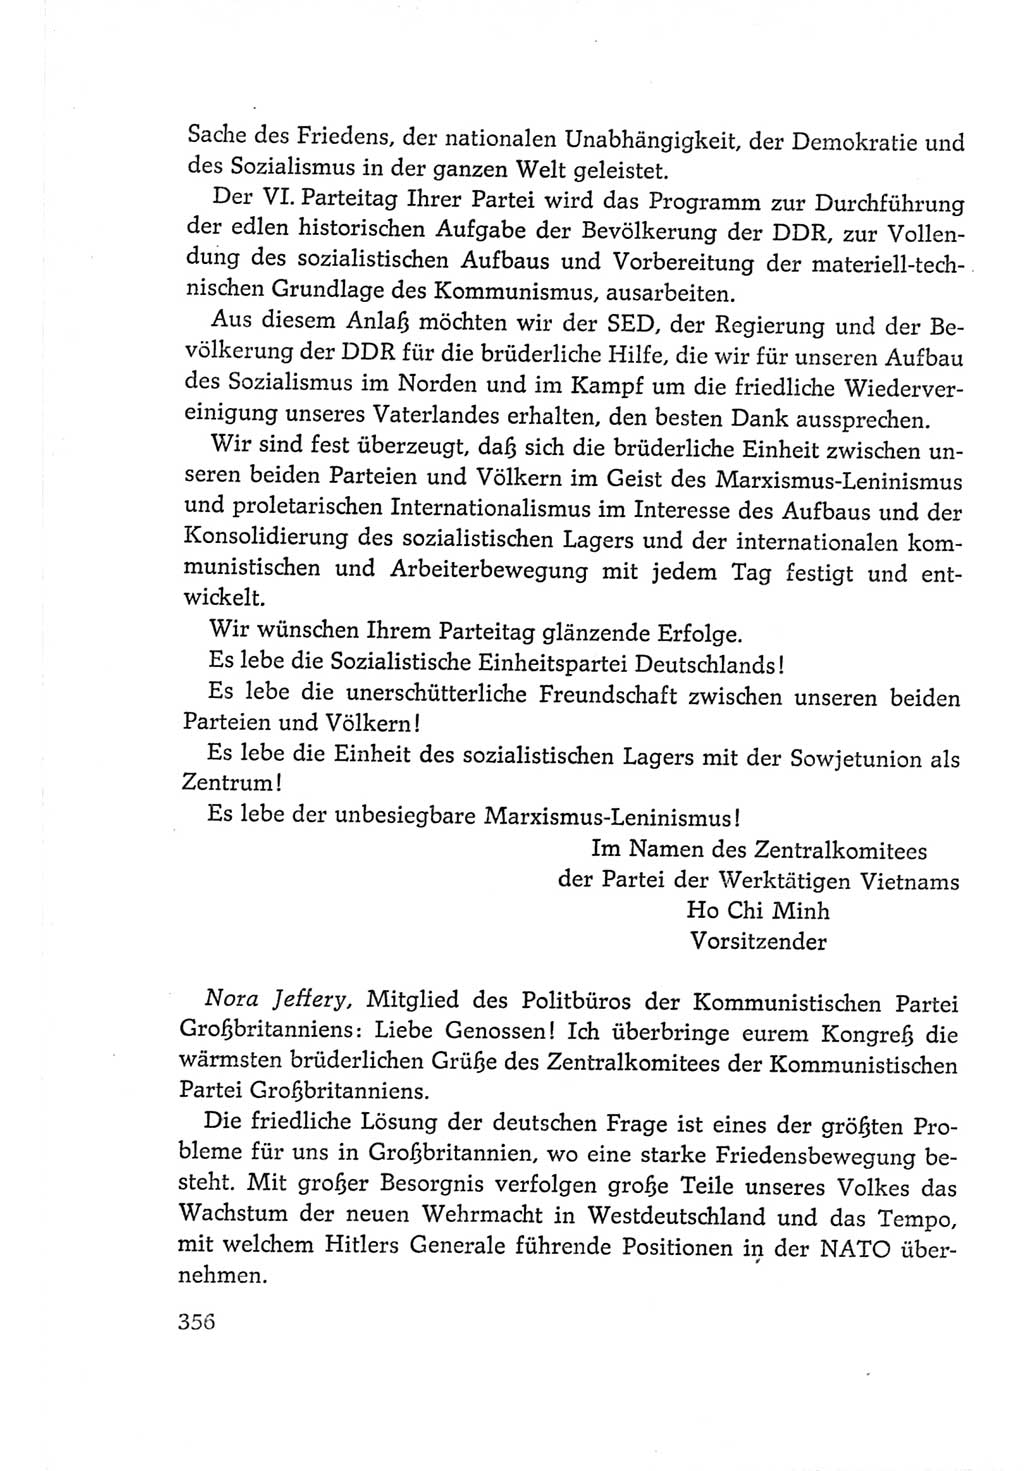 Protokoll der Verhandlungen des Ⅵ. Parteitages der Sozialistischen Einheitspartei Deutschlands (SED) [Deutsche Demokratische Republik (DDR)] 1963, Band Ⅱ, Seite 356 (Prot. Verh. Ⅵ. PT SED DDR 1963, Bd. Ⅱ, S. 356)